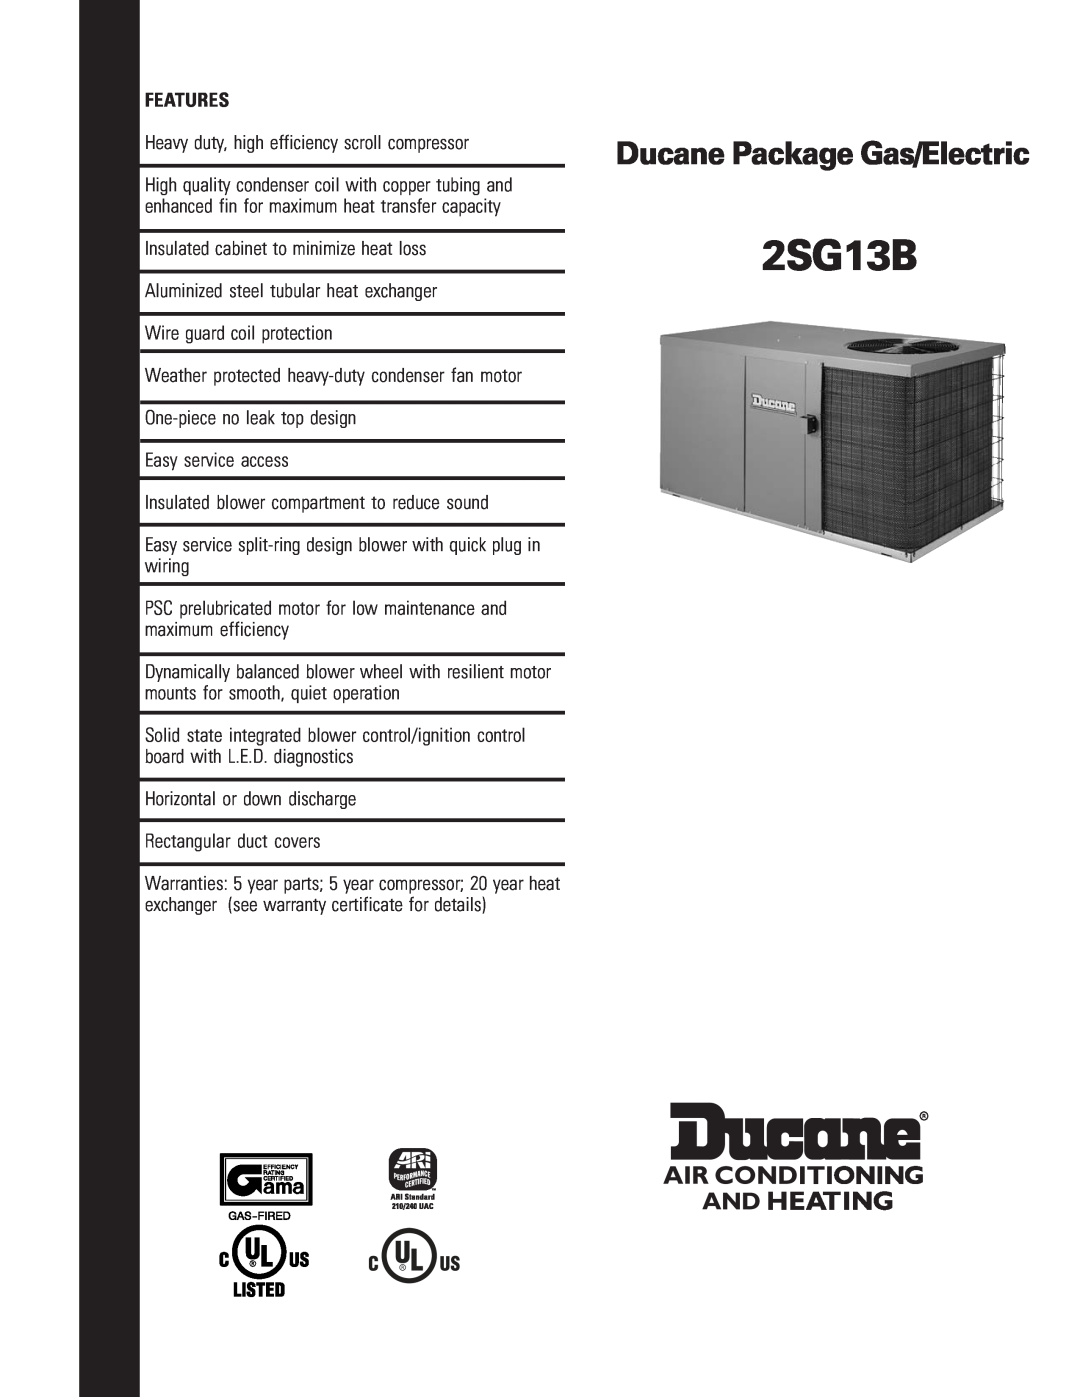 Ducane (HVAC) 2SG13B warranty Ducane Package Gas/Electric, Features 